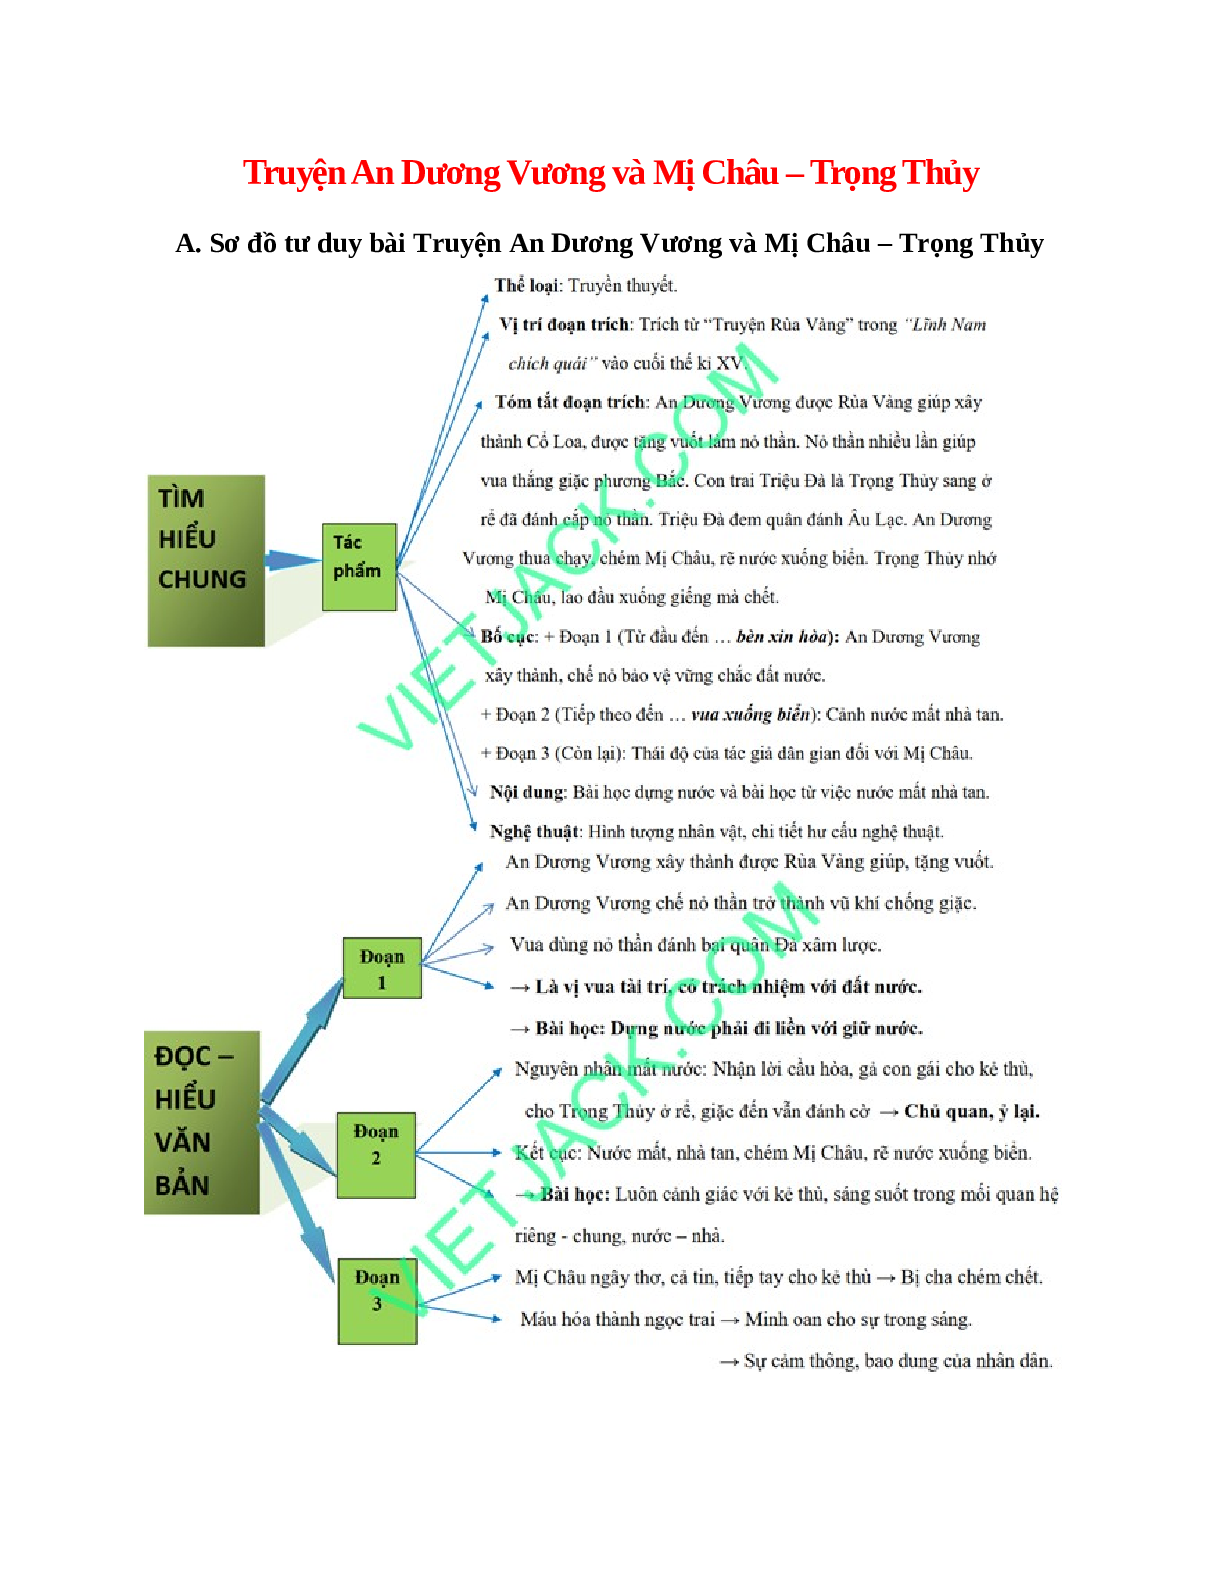 Sơ đồ tư duy bài Truyện An Dương Vương và Mị Châu – Trọng Thủy dễ nhớ, ngắn nhất - Ngữ văn lớp 10 (trang 1)